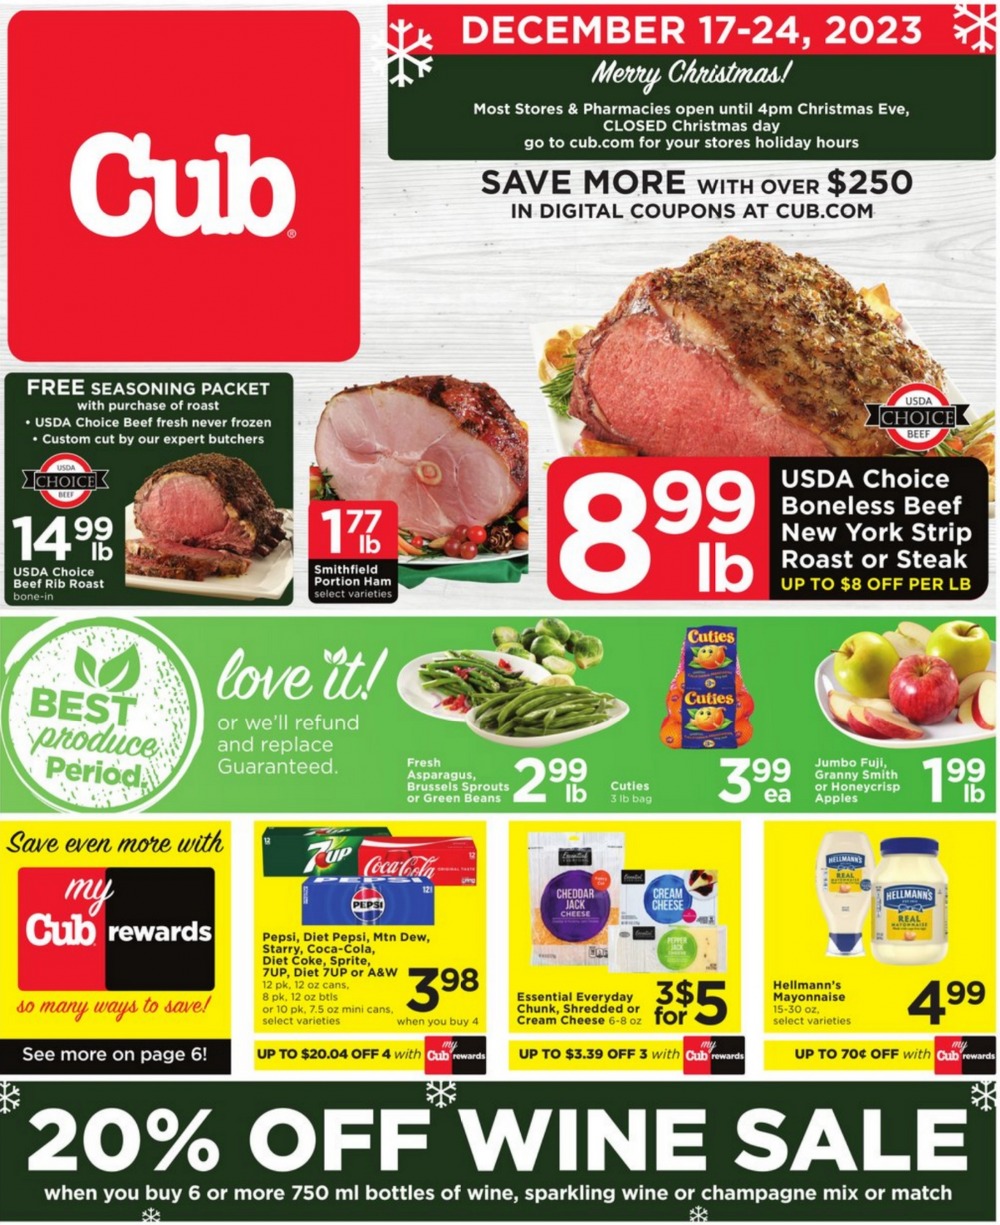 Cub Foods Christmas Deals 2023